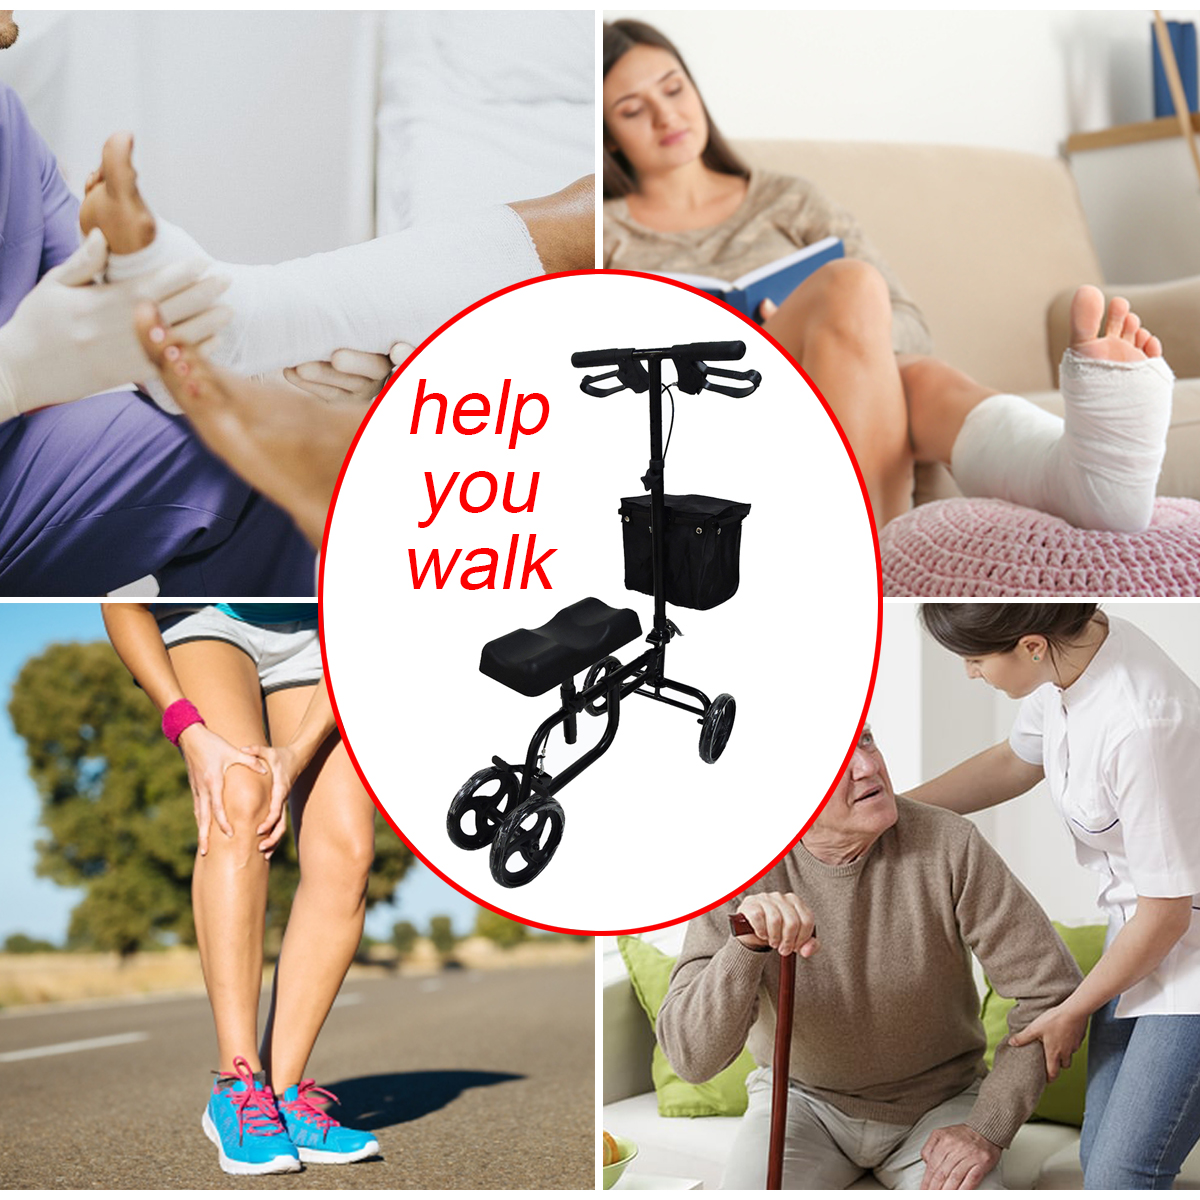 Mobility-Knee-Walker-Scooter-Roller-Crutch-Leg-Steerable-Foldable-Design-Adjustable-Height-Adjustabl-1940054-2